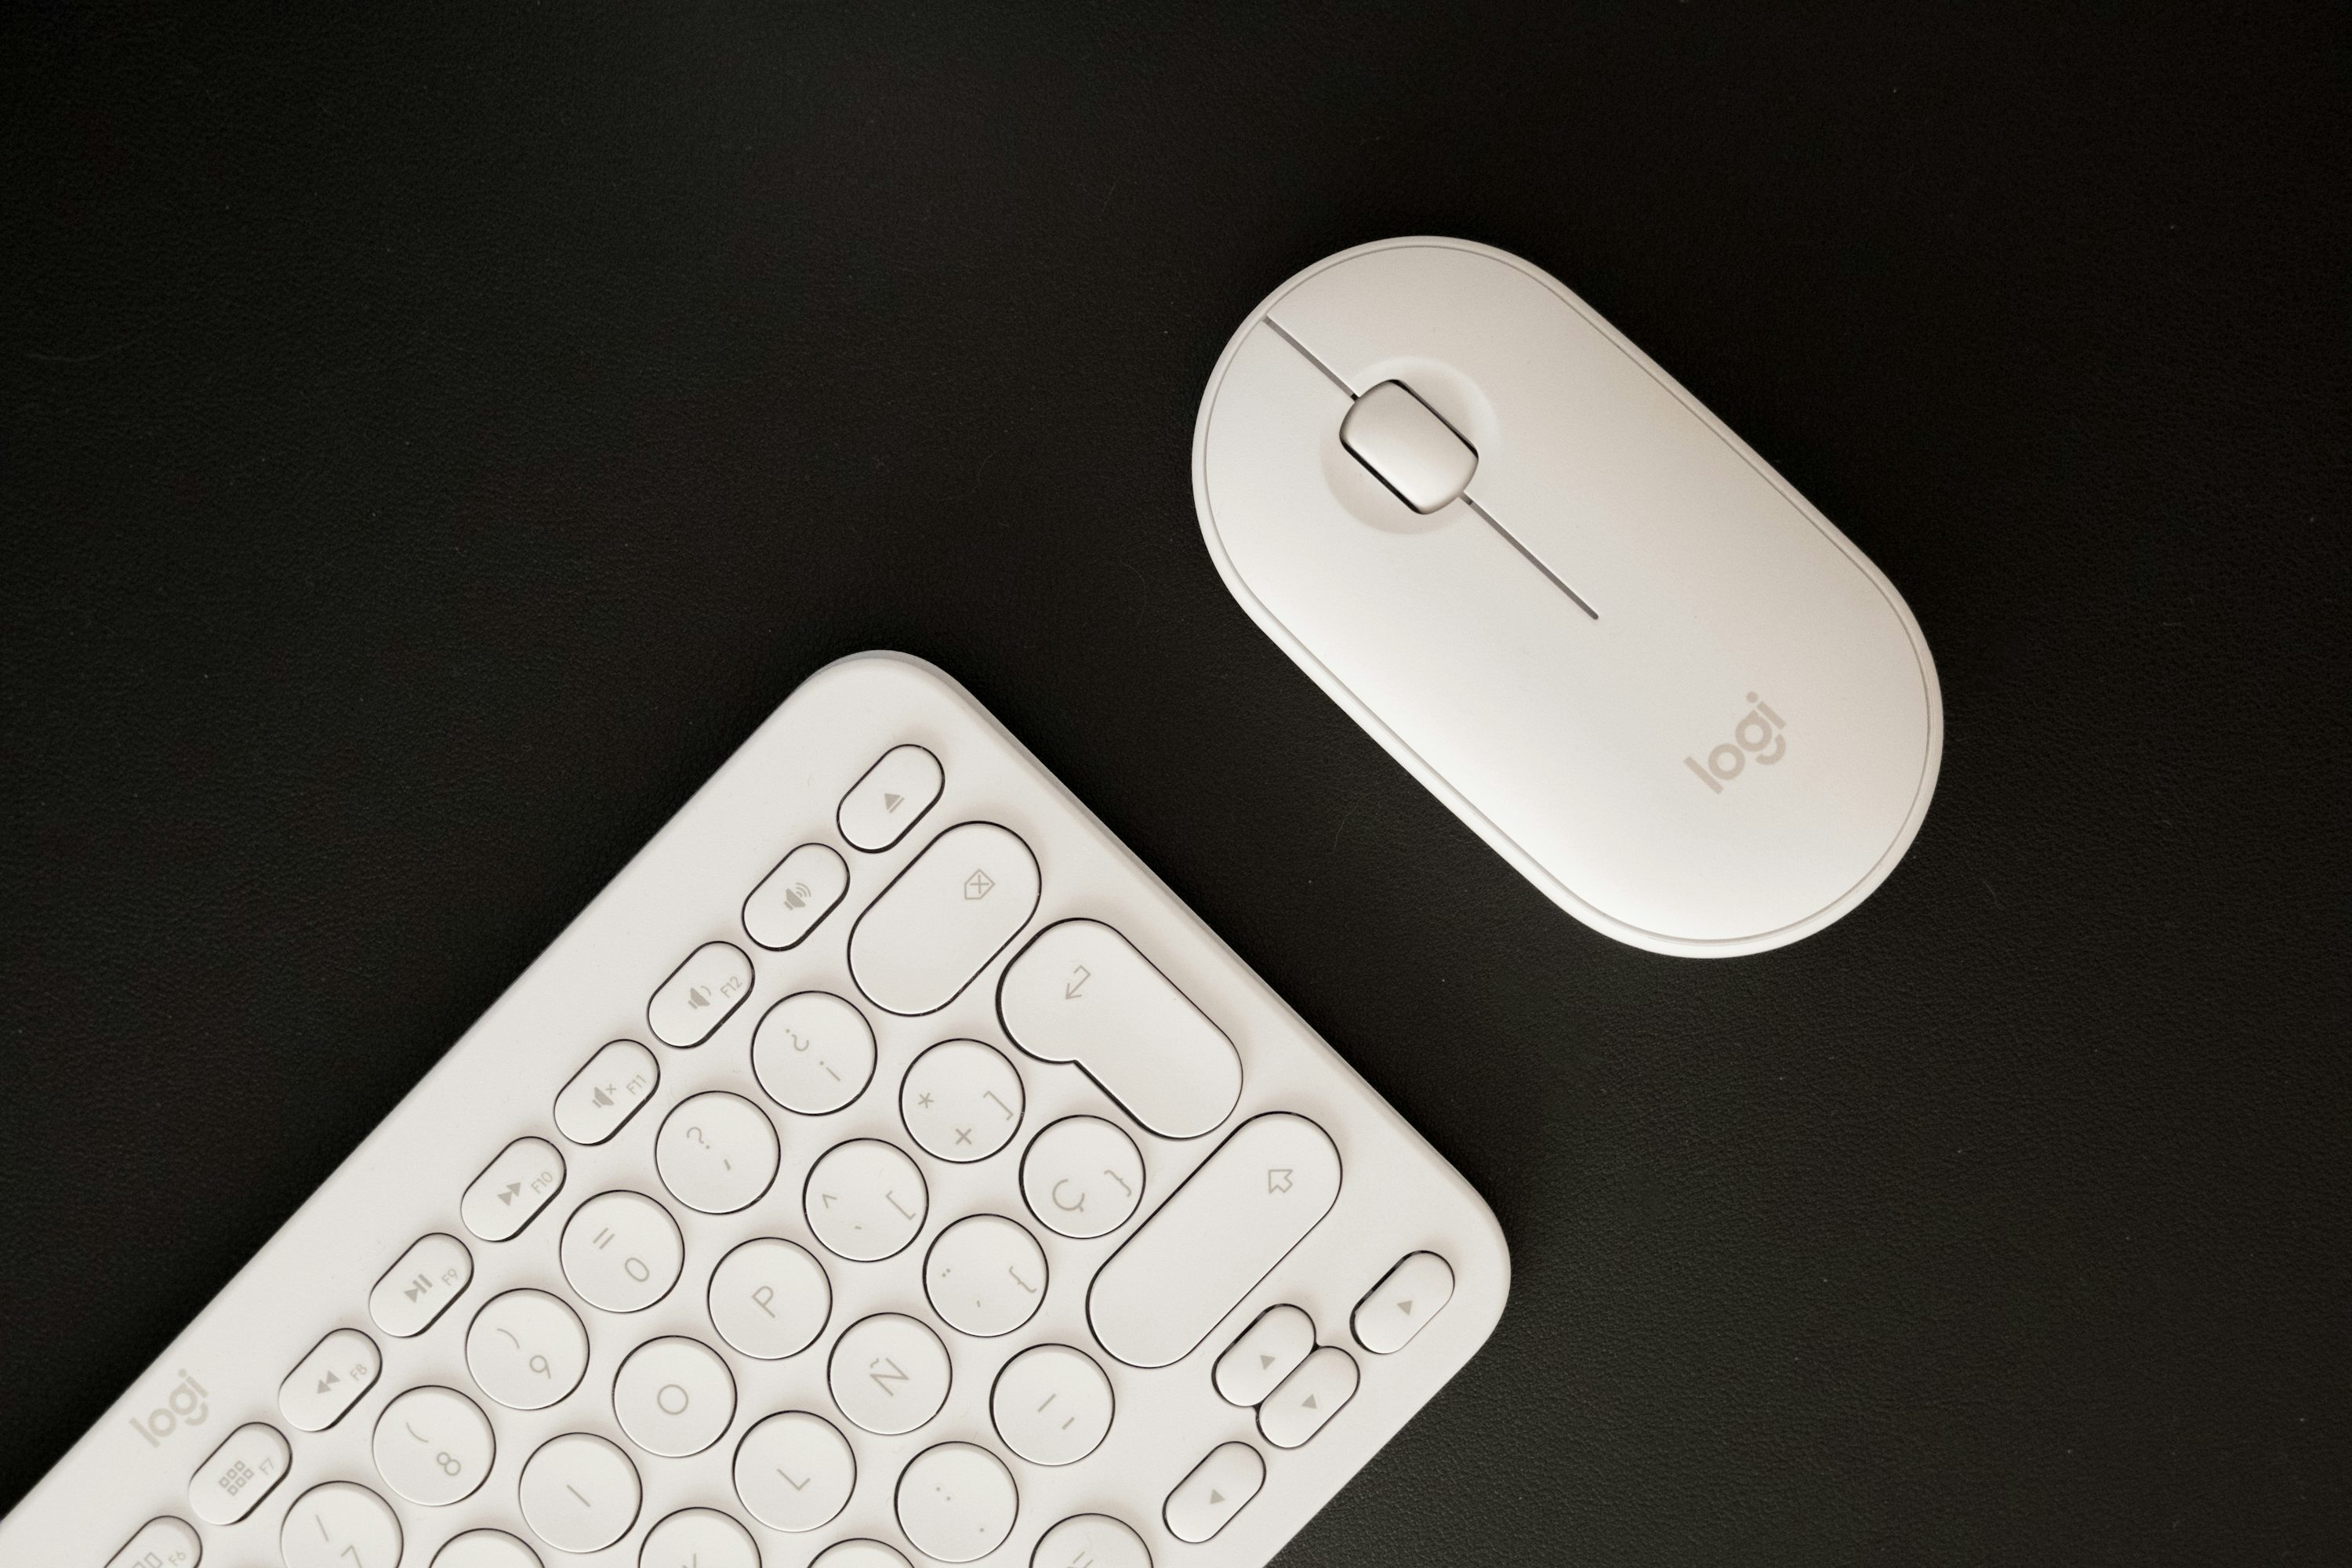 un teclado y un ratón sobre una superficie negra